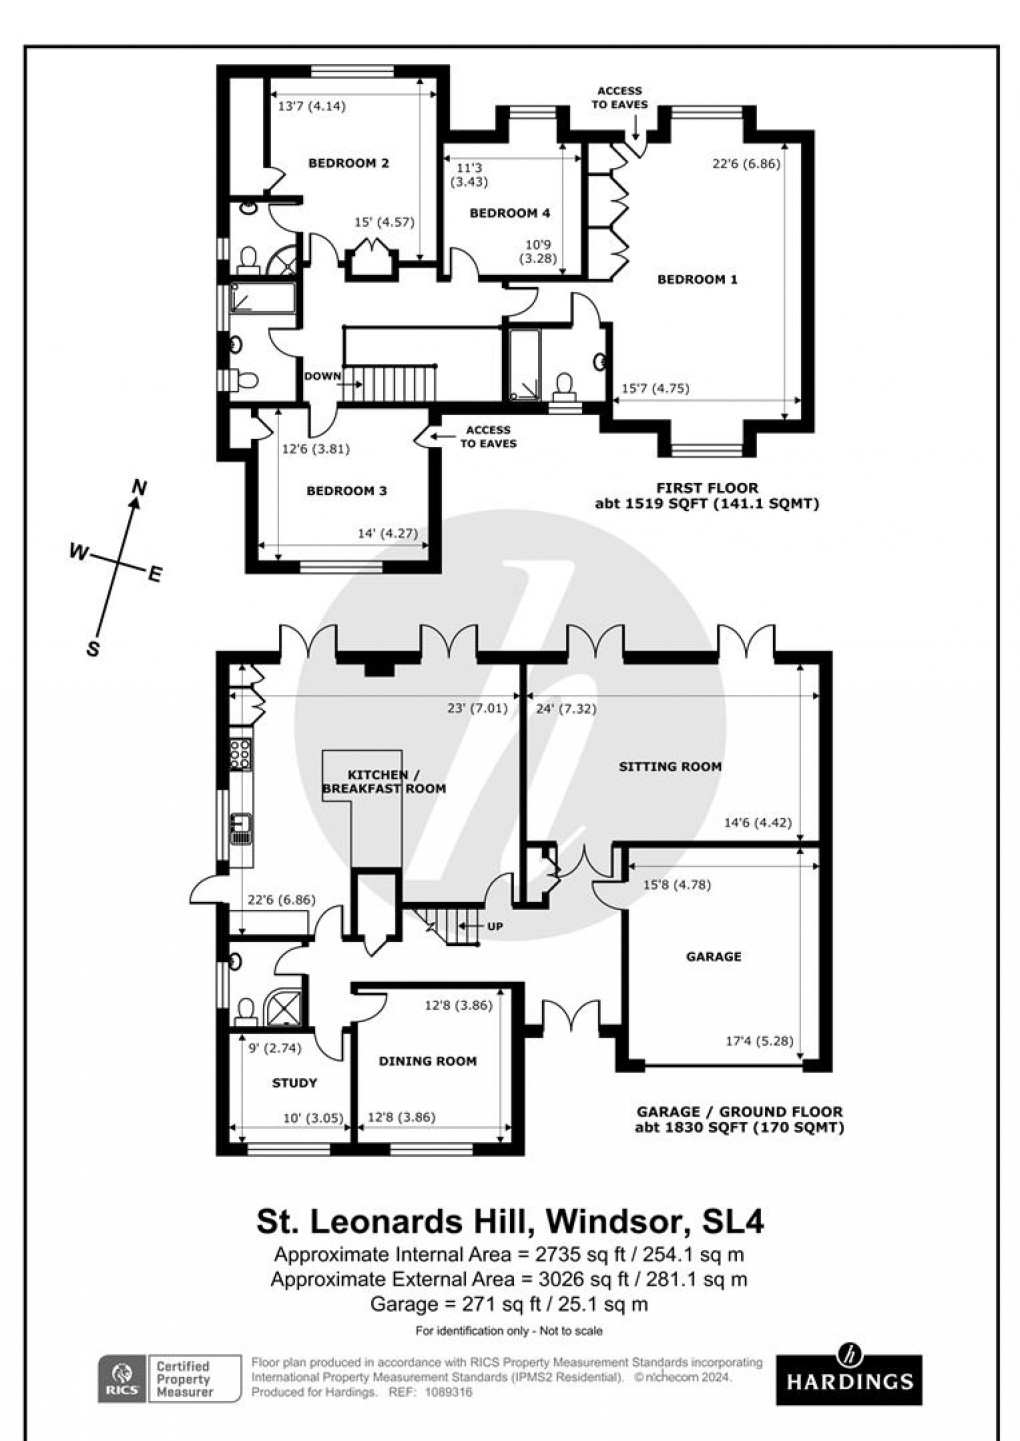 Floorplan for St. Leonards Hill, Windsor